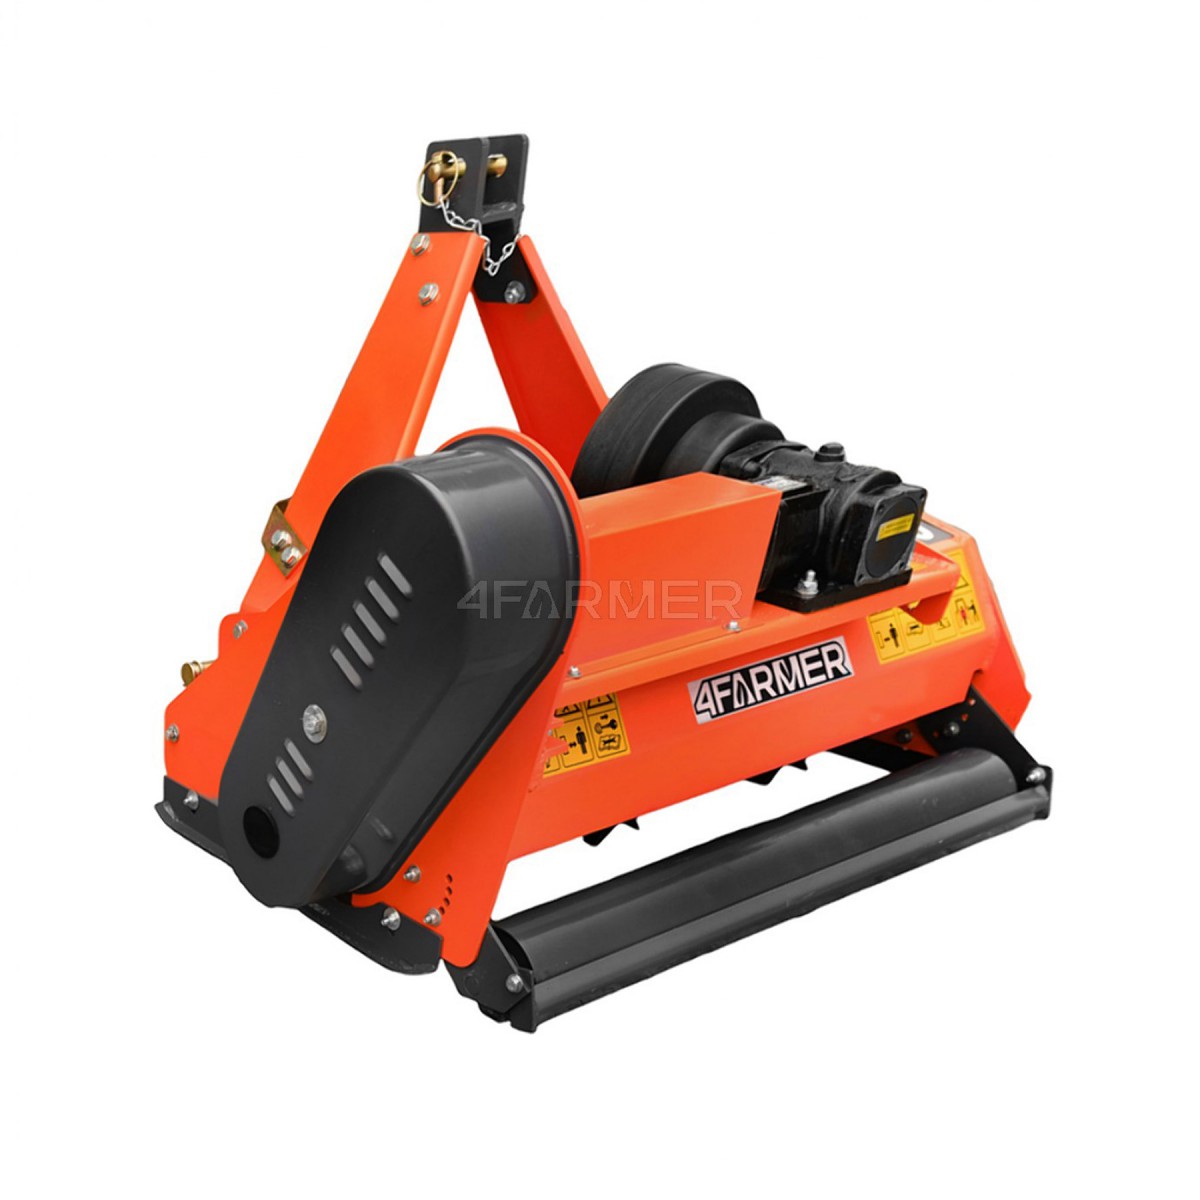 Trituradora de martillos EF 95 4FARMER - naranja